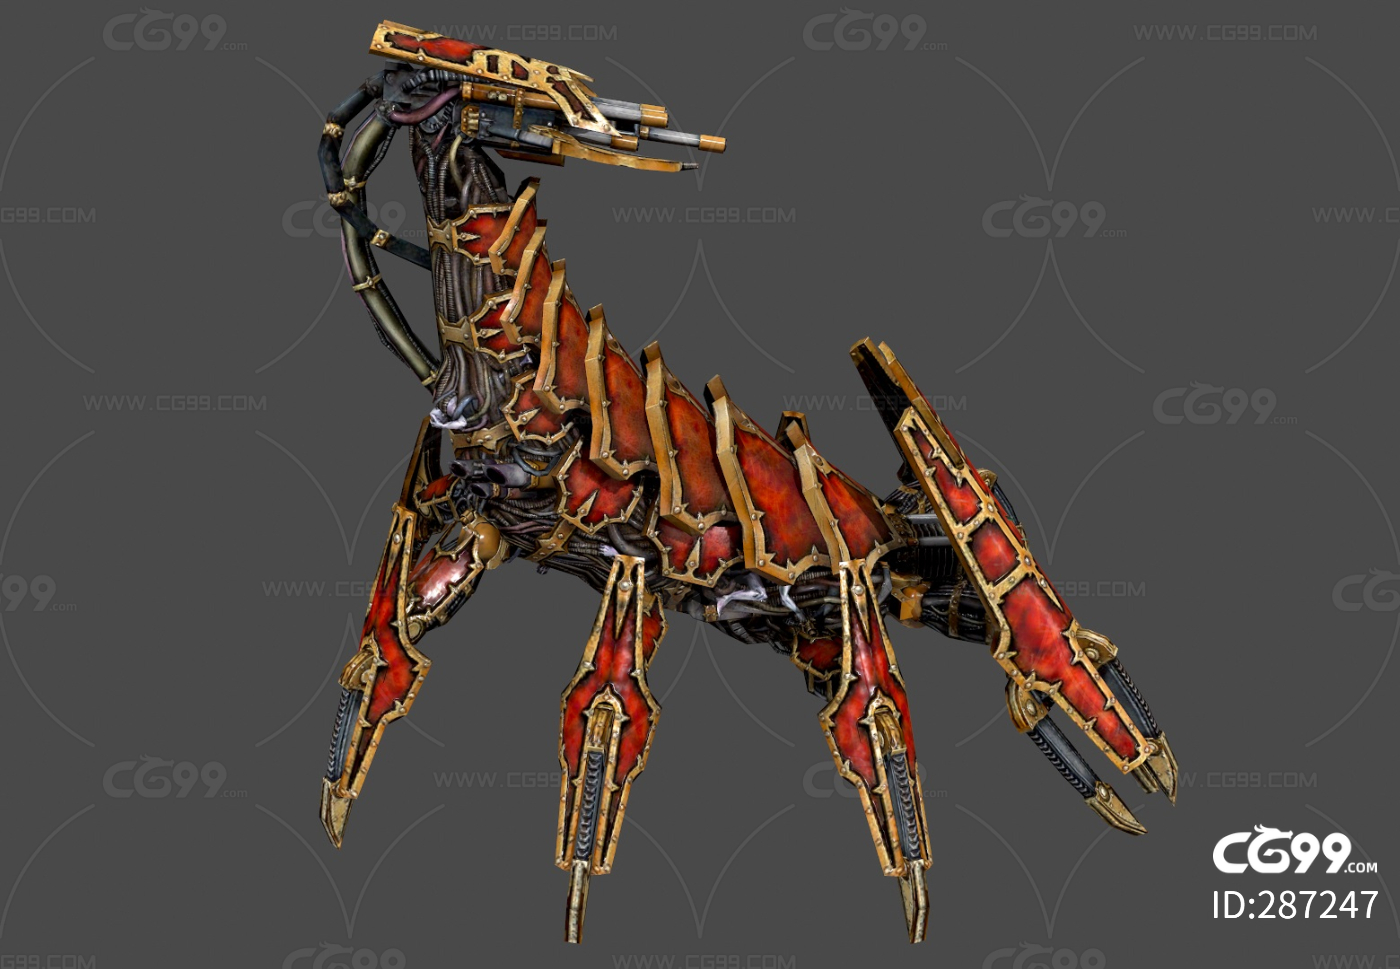 次世代 黄铜魔蝎 战锤40 写实 科幻 机甲蝎子-cg模型免费下载-CG99